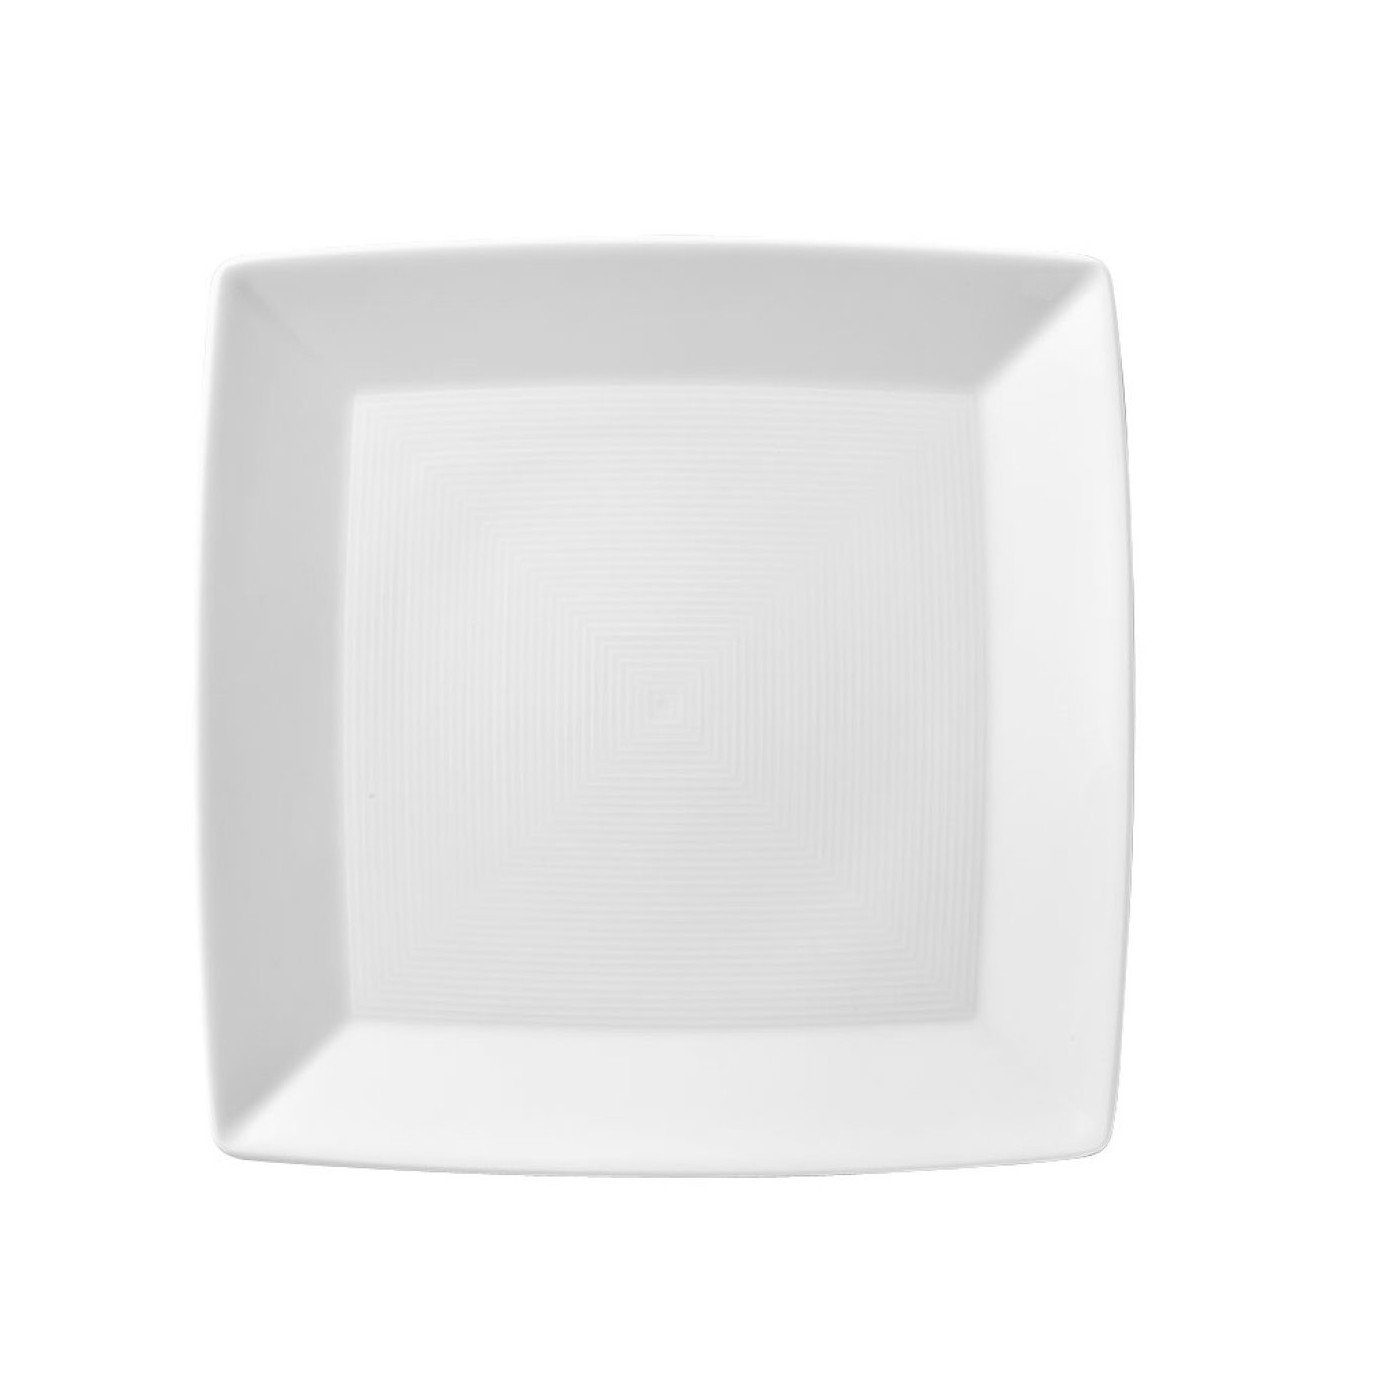 Thomas Porzellan Servierteller Trend Weiß Platte 22 cm eckig, Porzellan, (1-tlg)